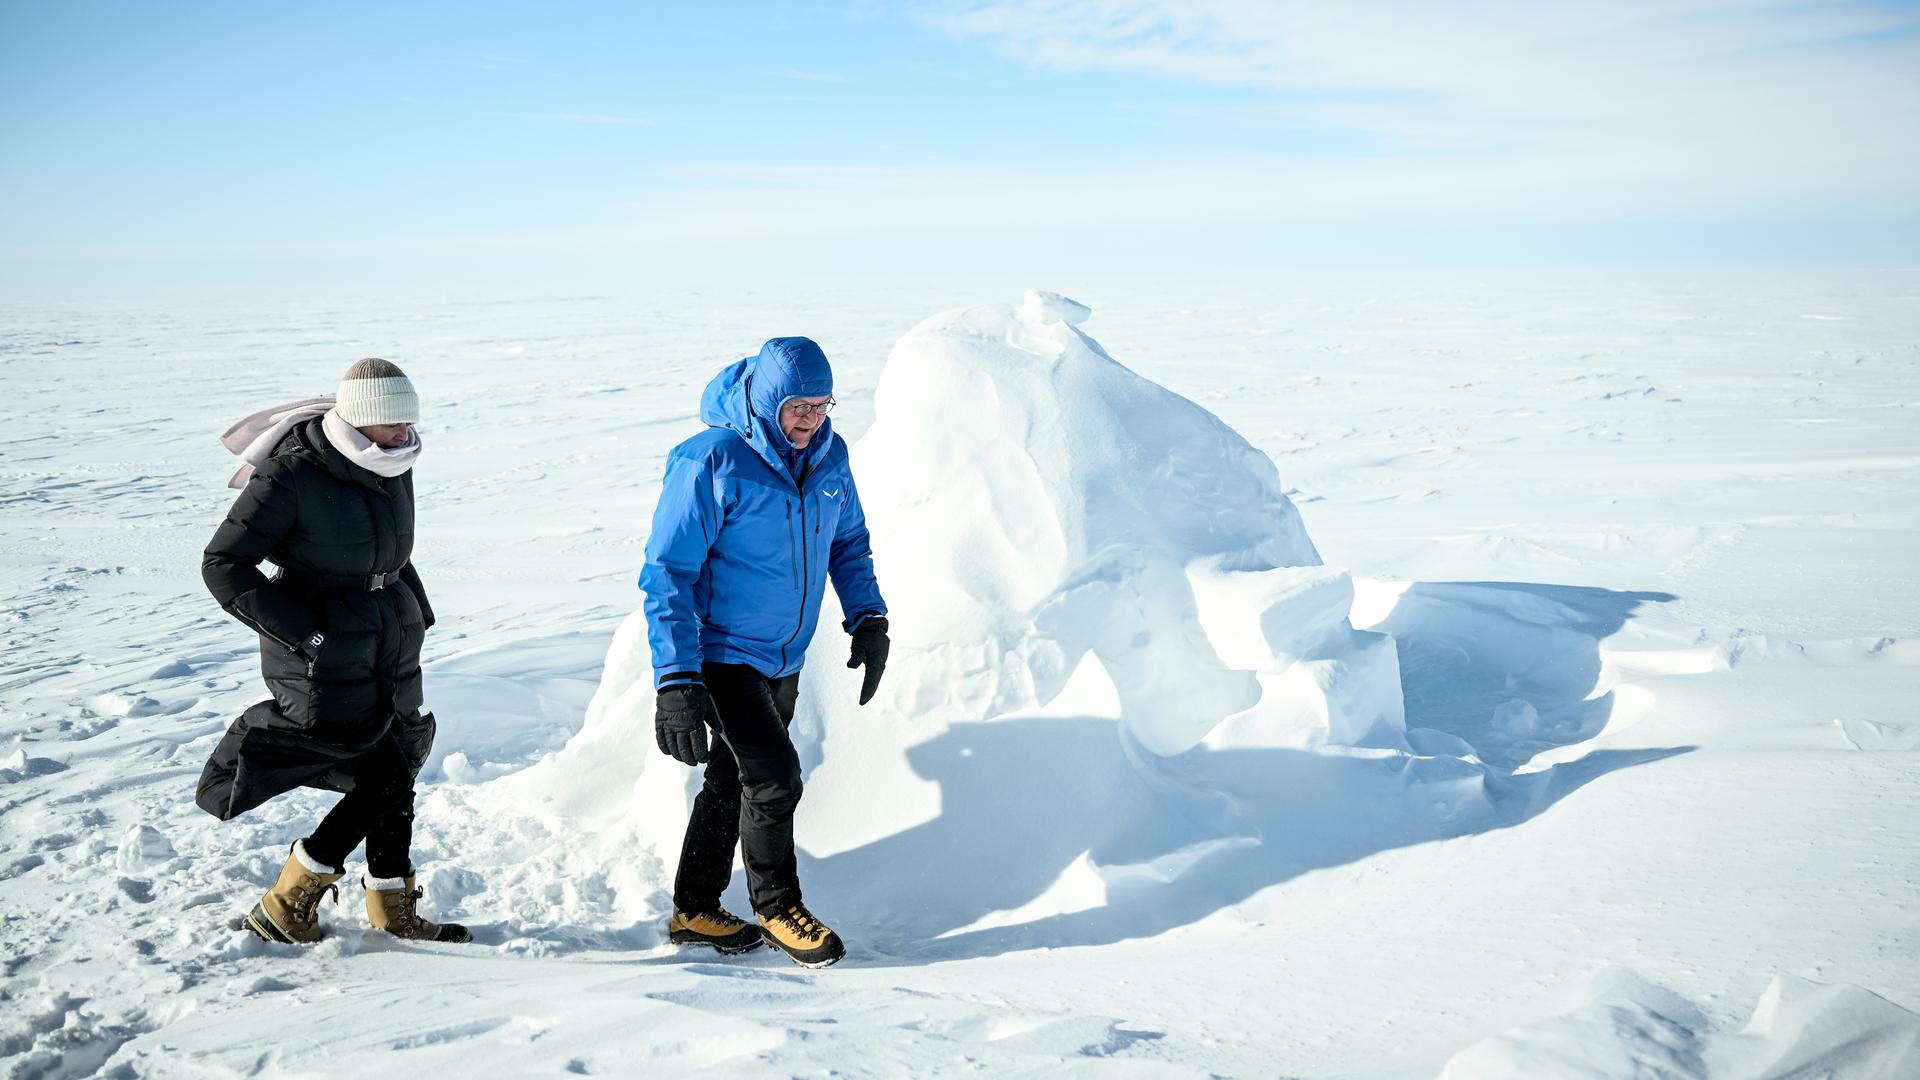 Bundespräsident Frank-Walter Steinmeier und seine Frau Elke Büdenbender sehen sich in der Arktis in Tuktoyaktuk ein Iglu an.